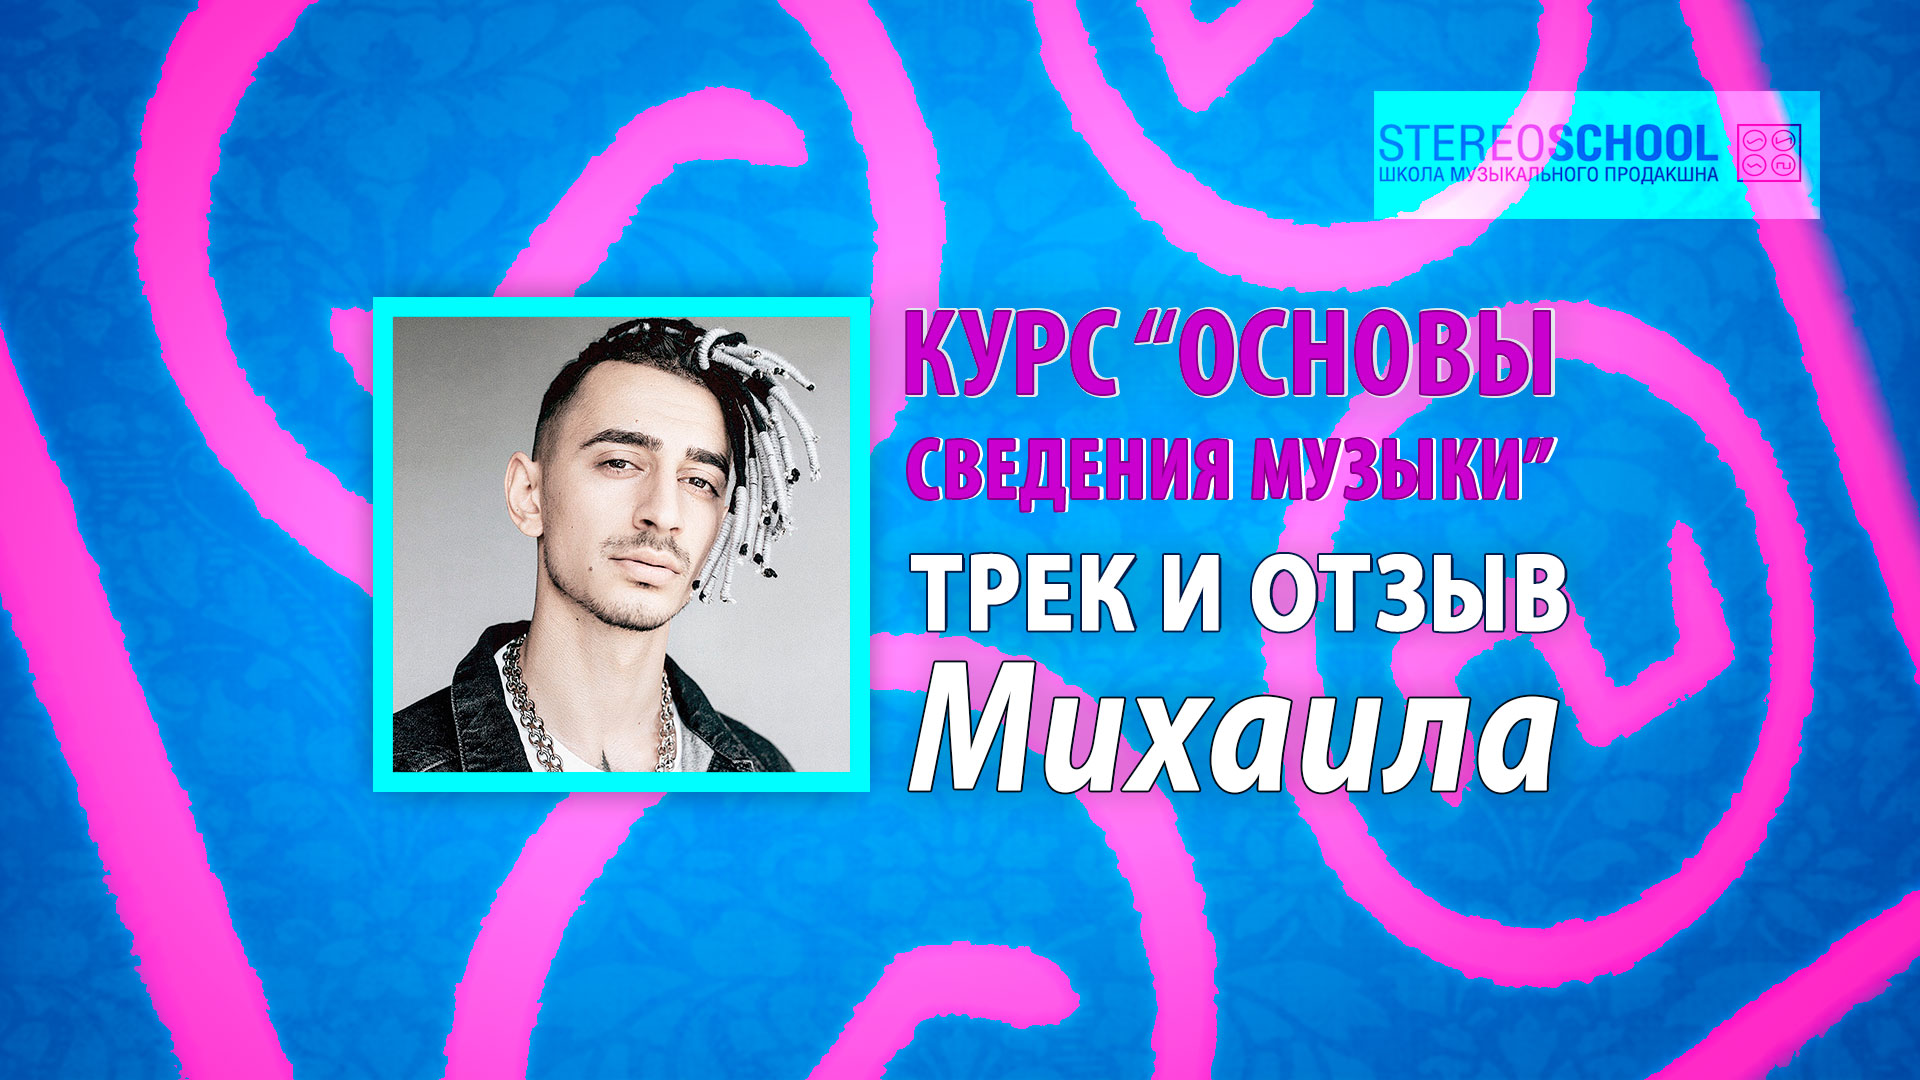 You are currently viewing Дипломный трек и отзыв Михаила